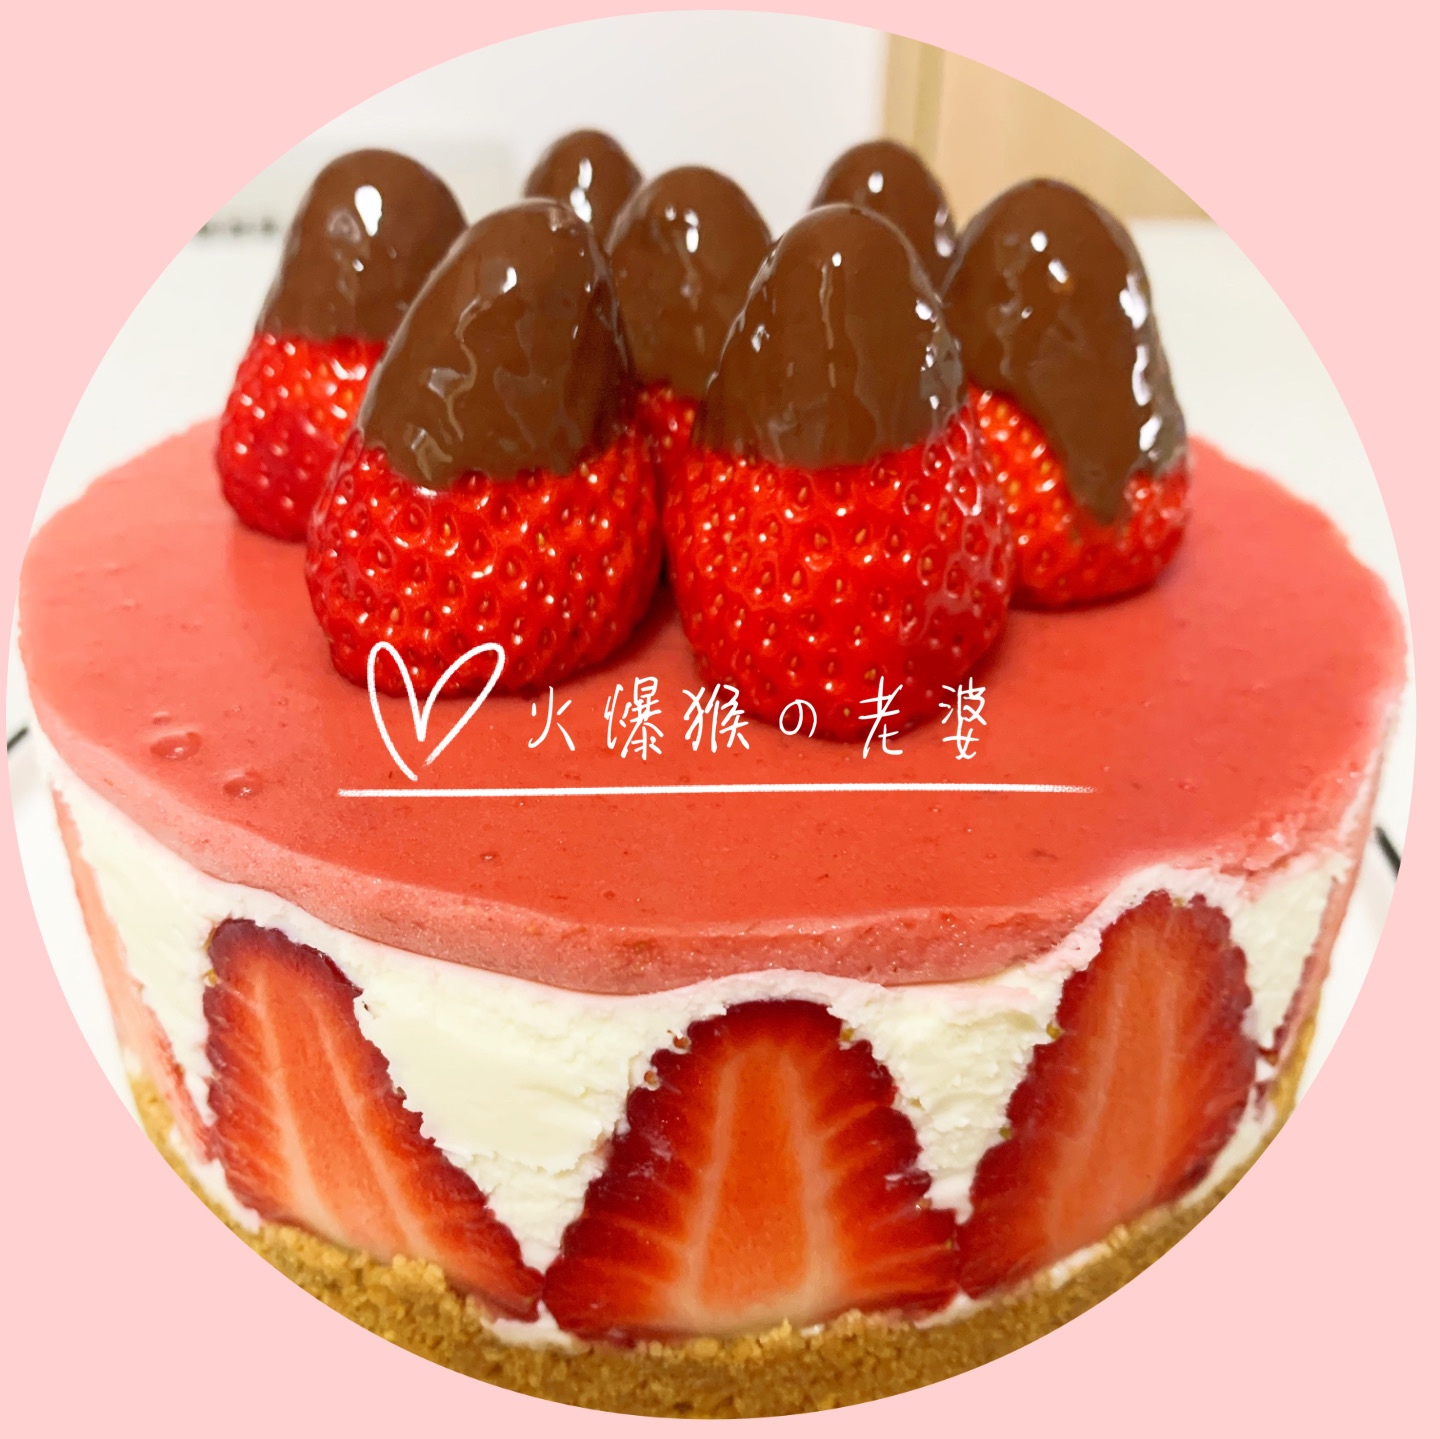 颜值爆表的草莓蛋糕🍓无需烤箱的做法